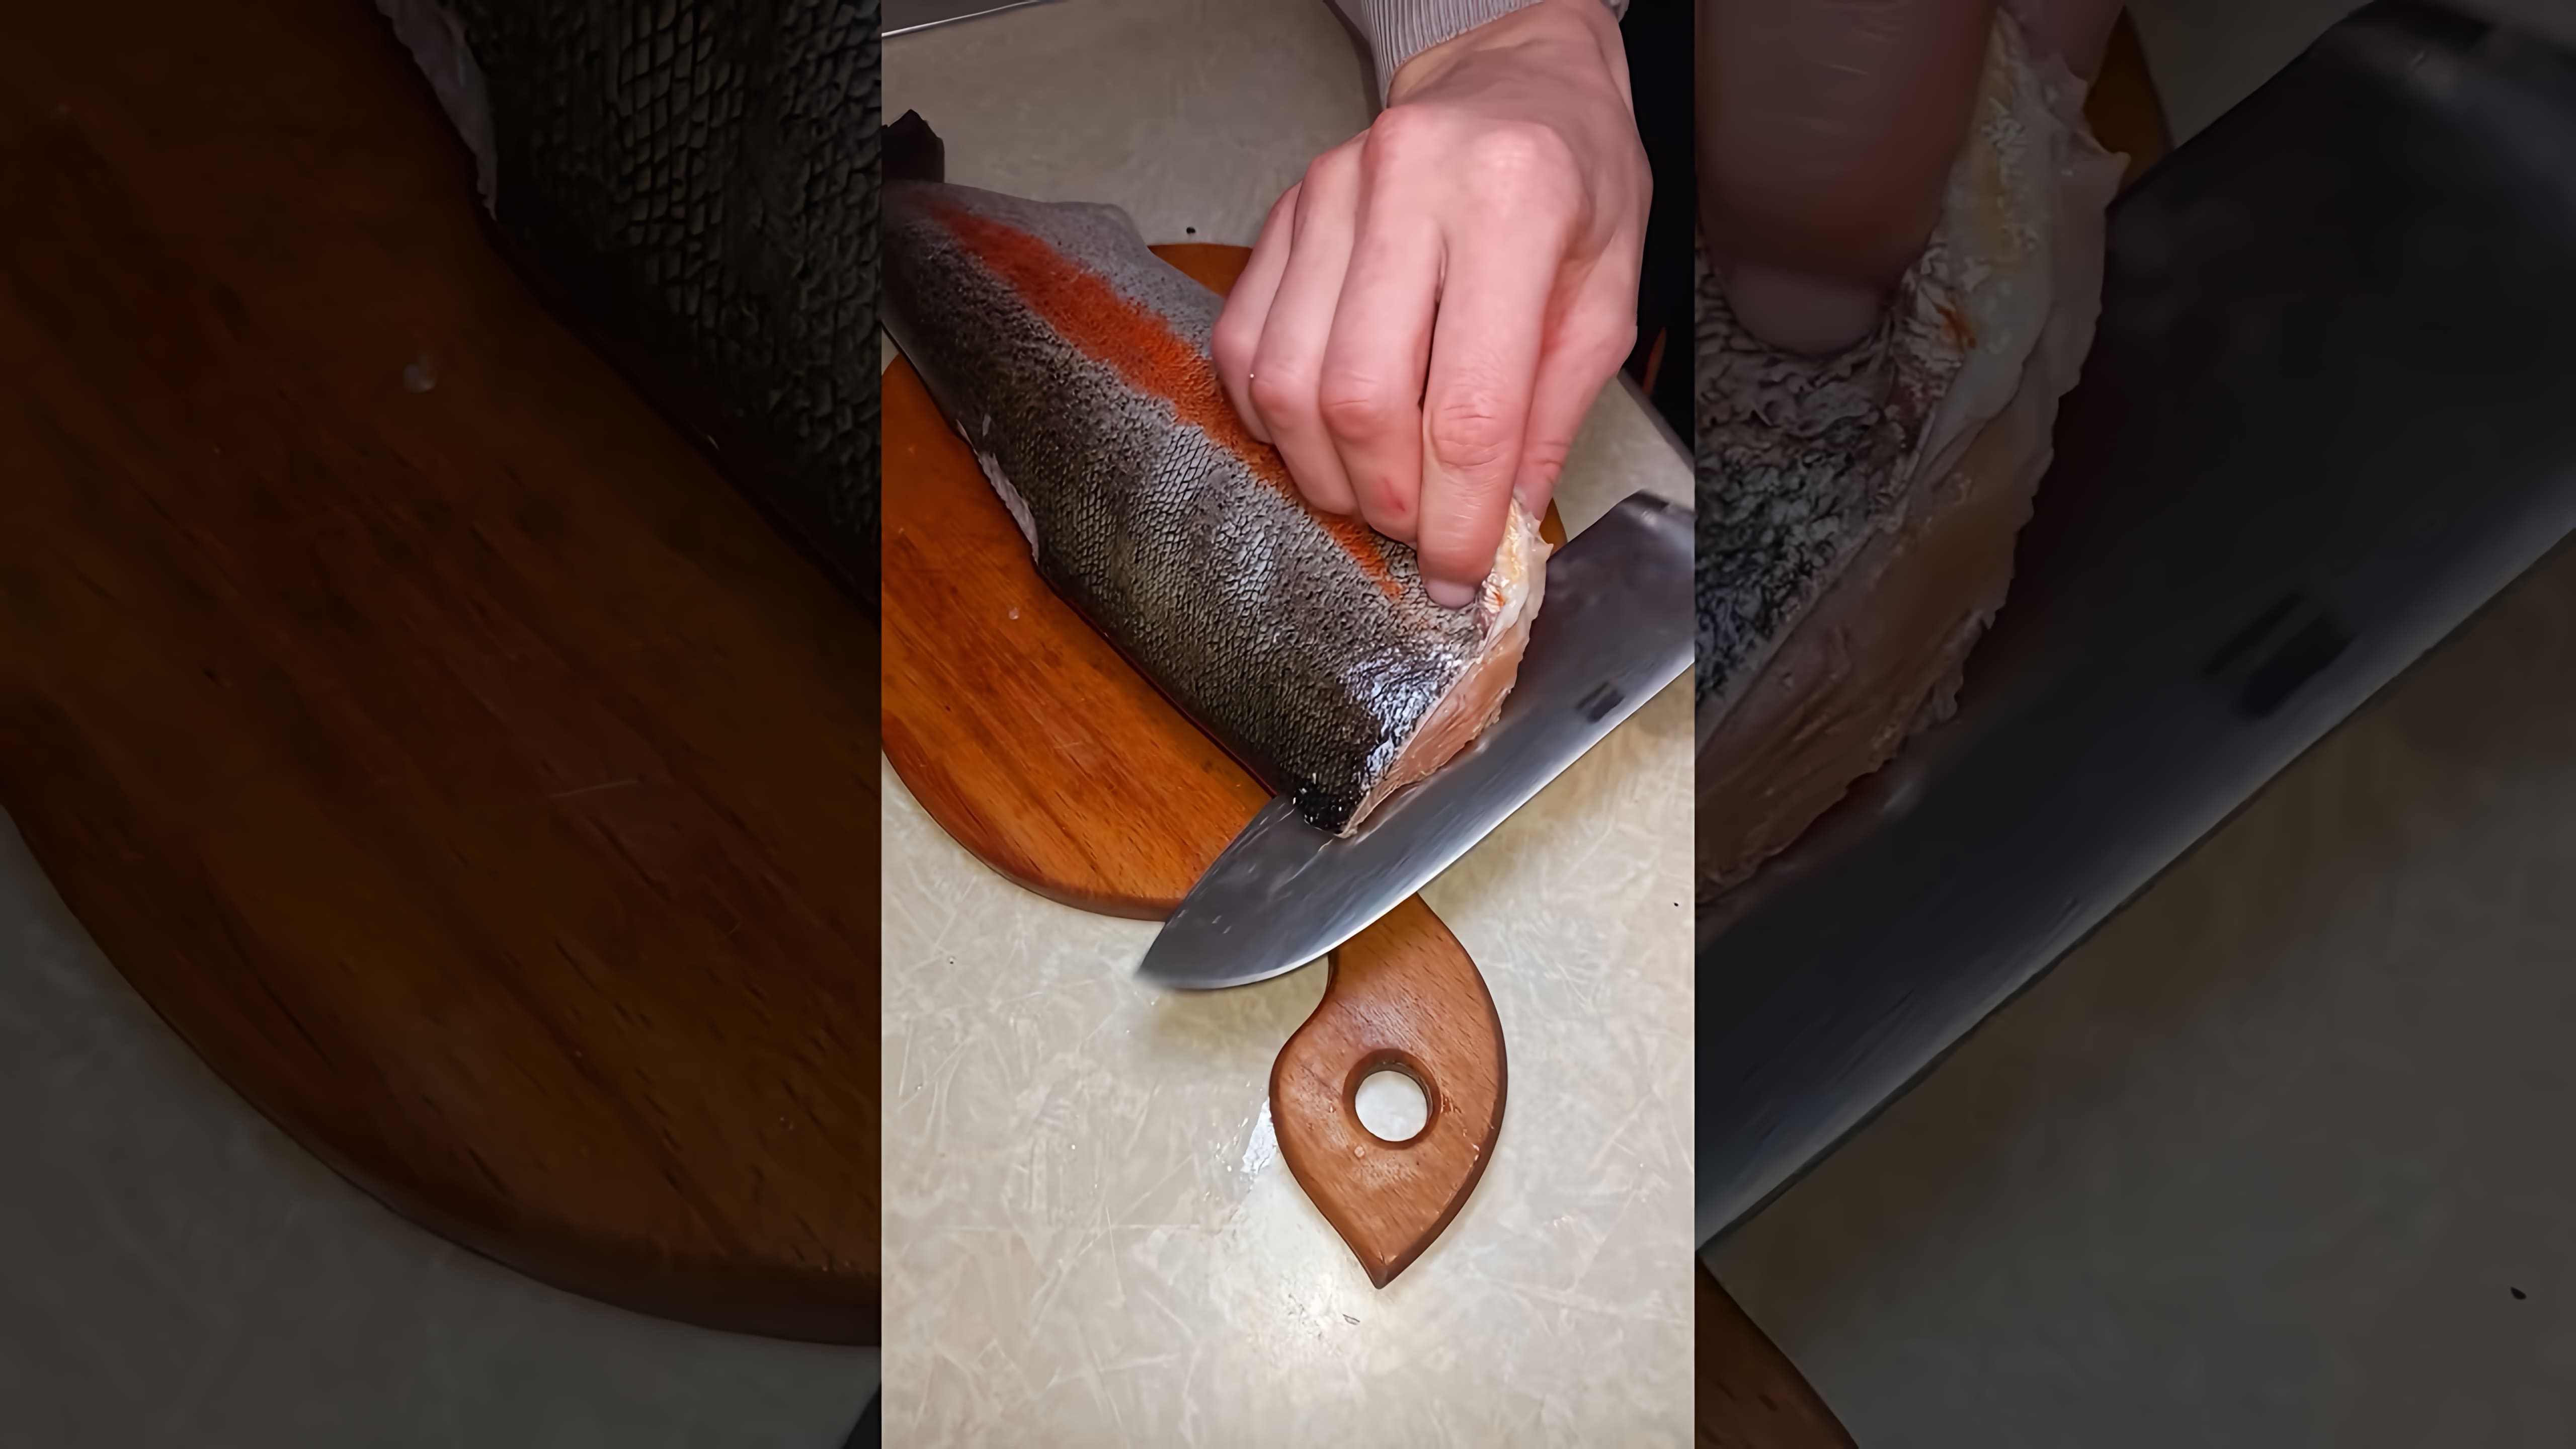 В этом видео демонстрируется процесс приготовления красной рыбы (форели) с использованием сахара